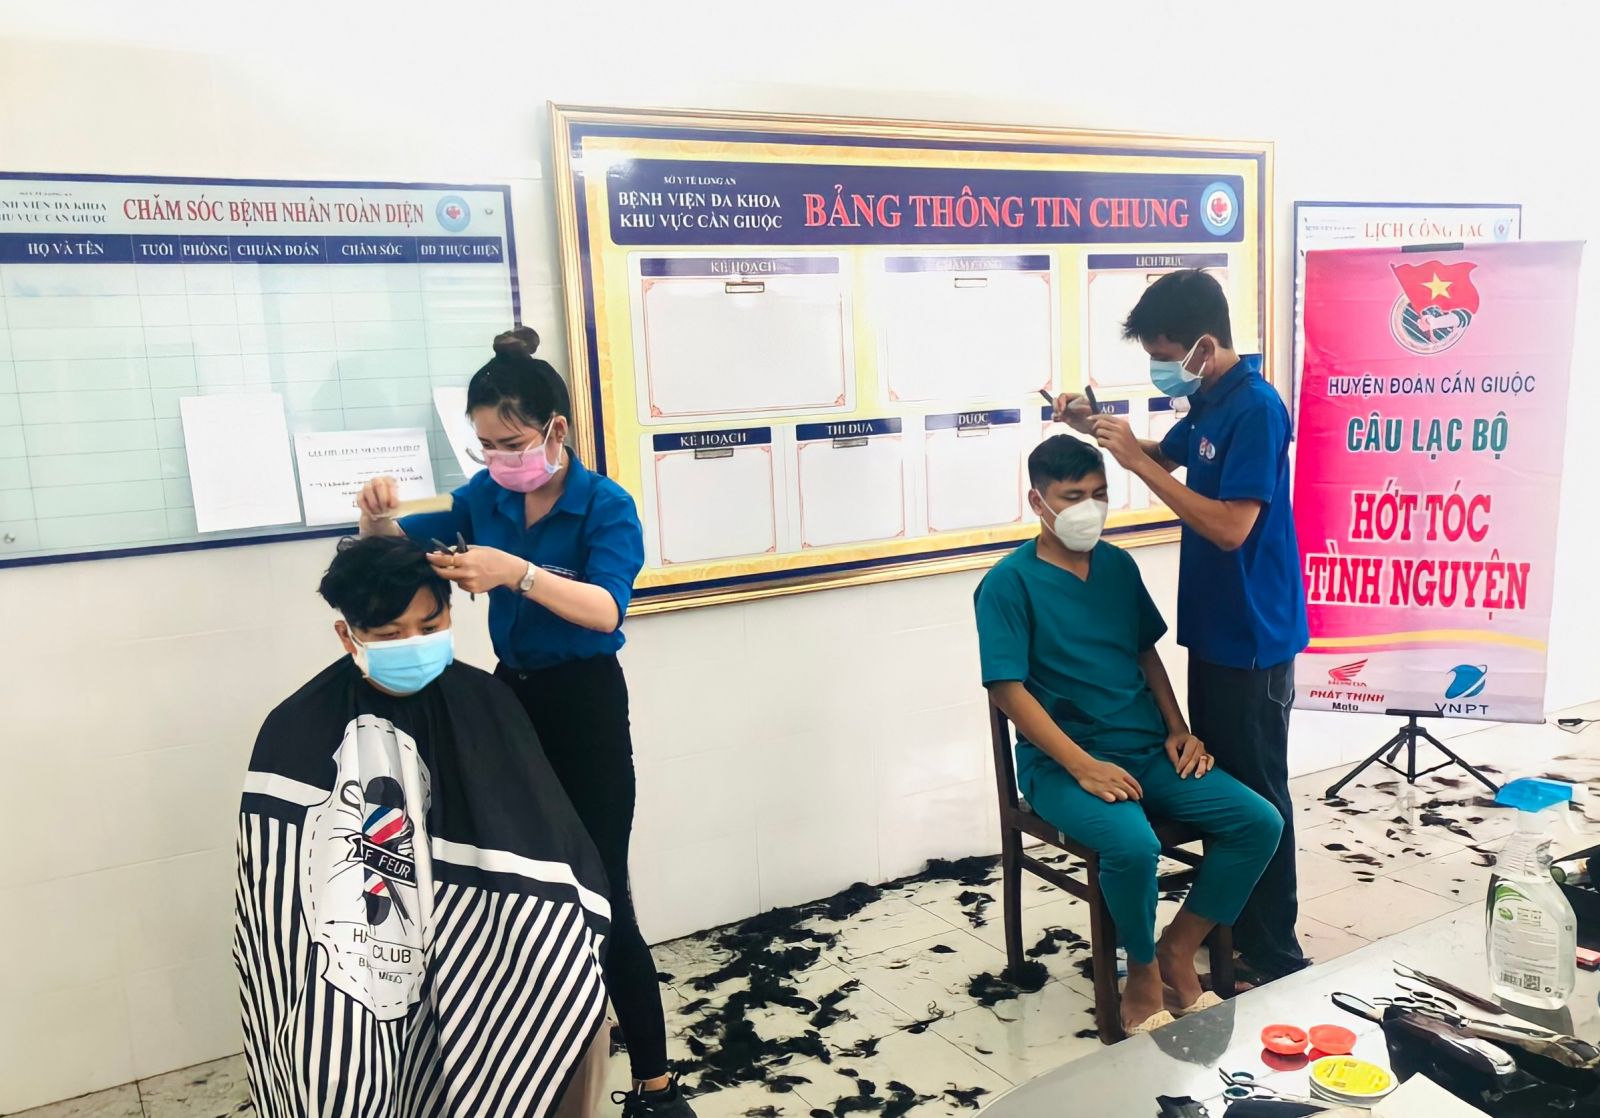 Câu lạc bộ Hớt tóc tình nguyện tổ chức cắt tóc miễn phí cho đội ngũ cán bộ, nhân viên Bệnh viện Đa khoa khu vực Cần Giuộc